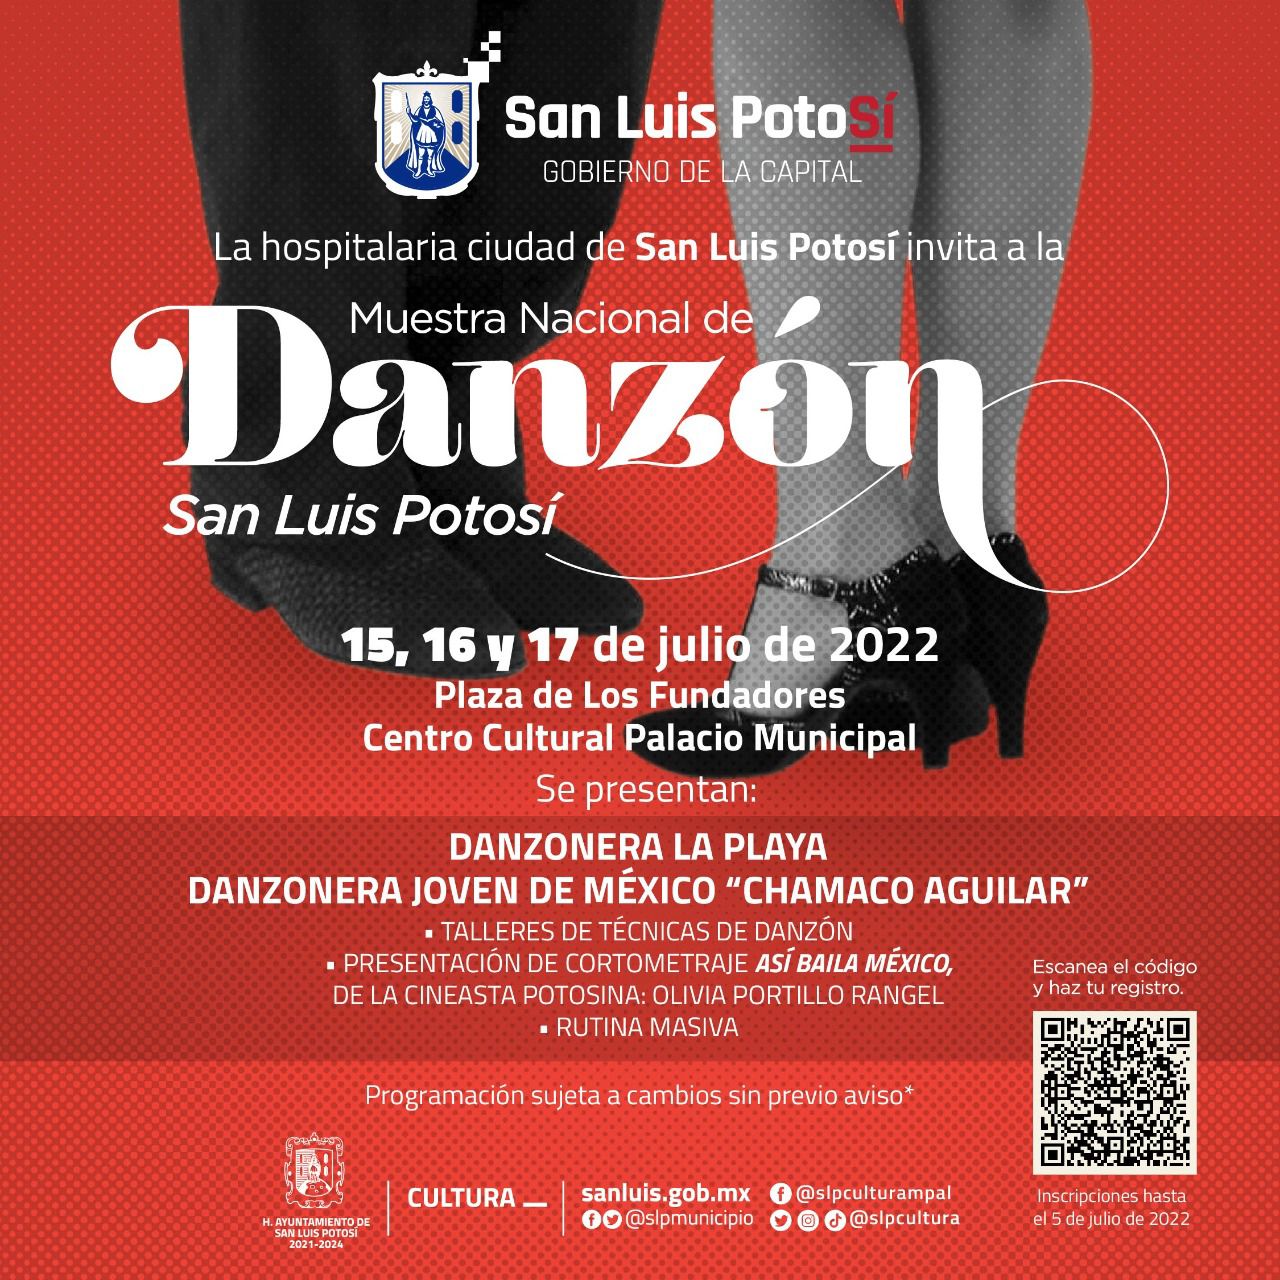  ¡Habrá Muestra Nacional de Danzón en San Luis Potosí en julio!